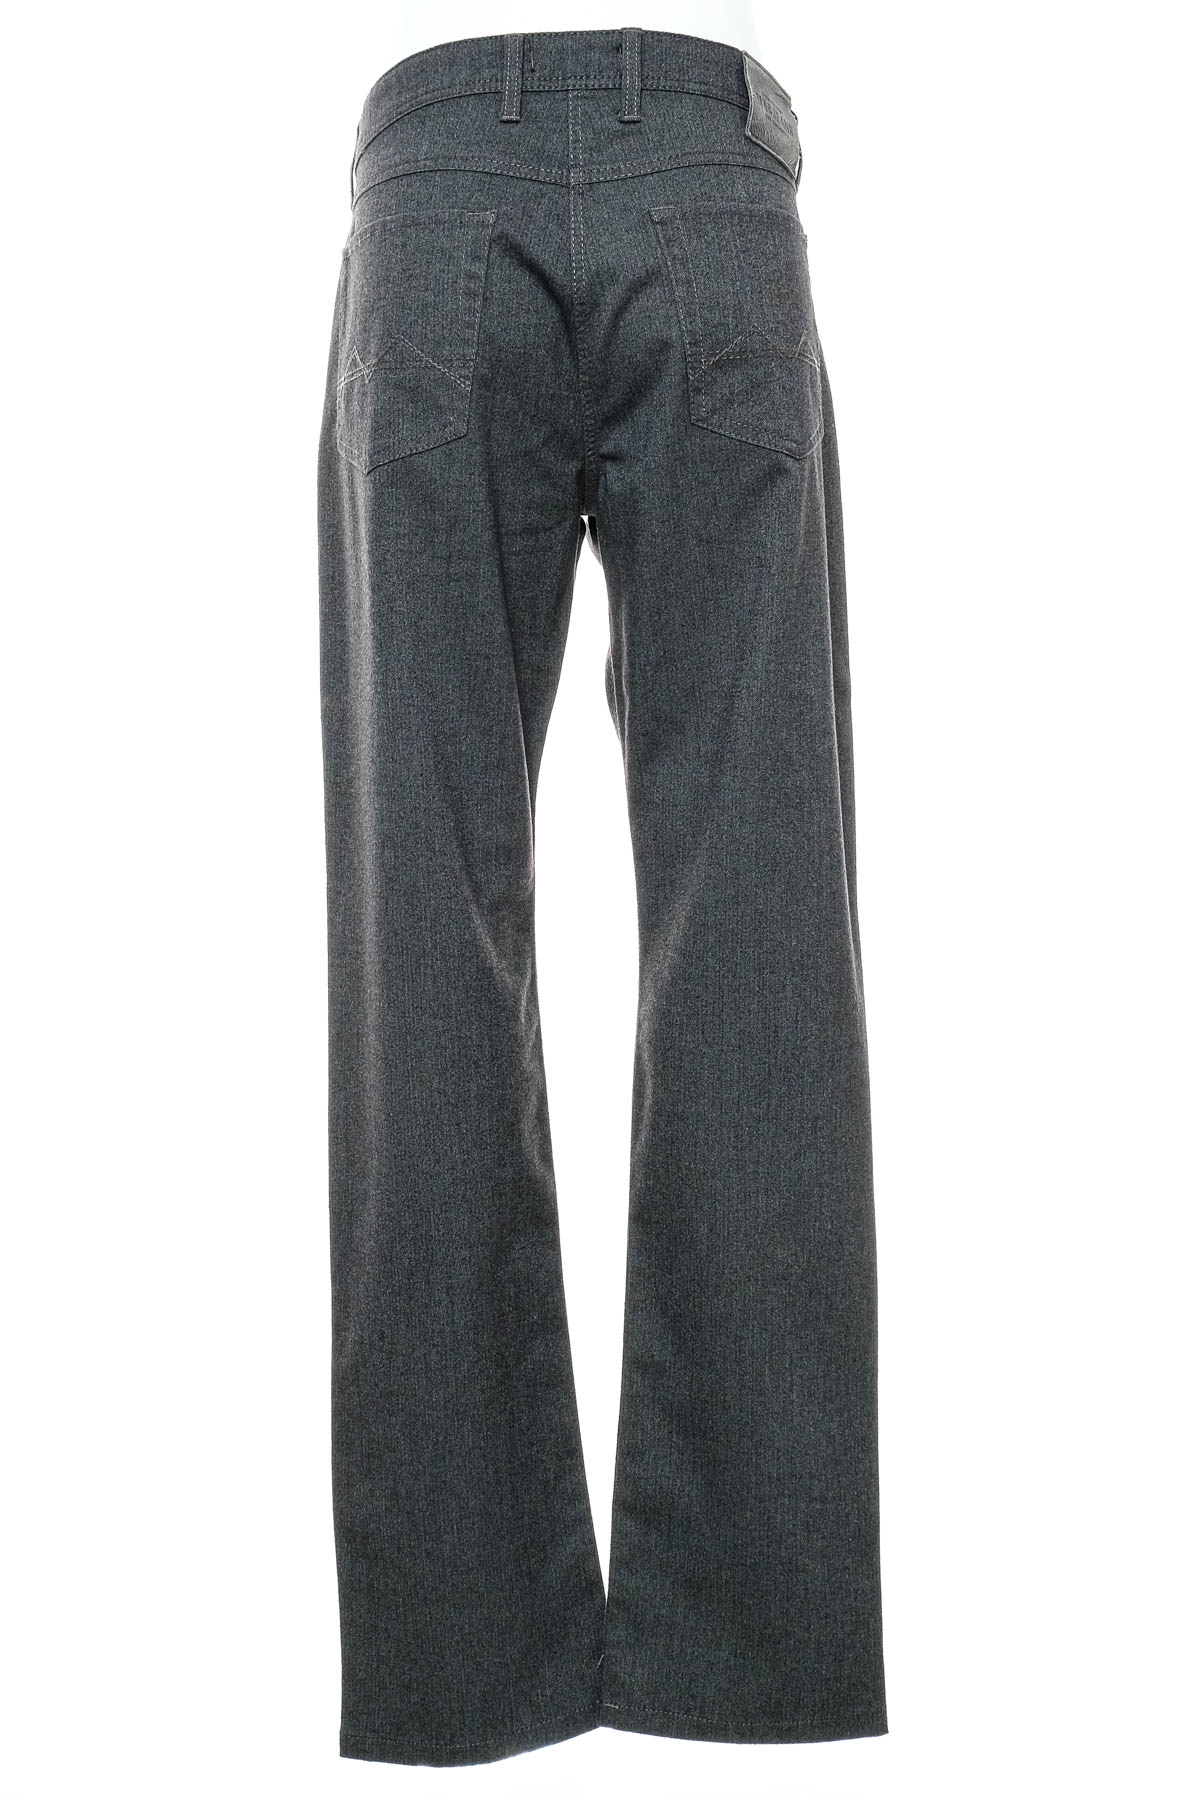 Men's trousers - MAC Jeans - 1